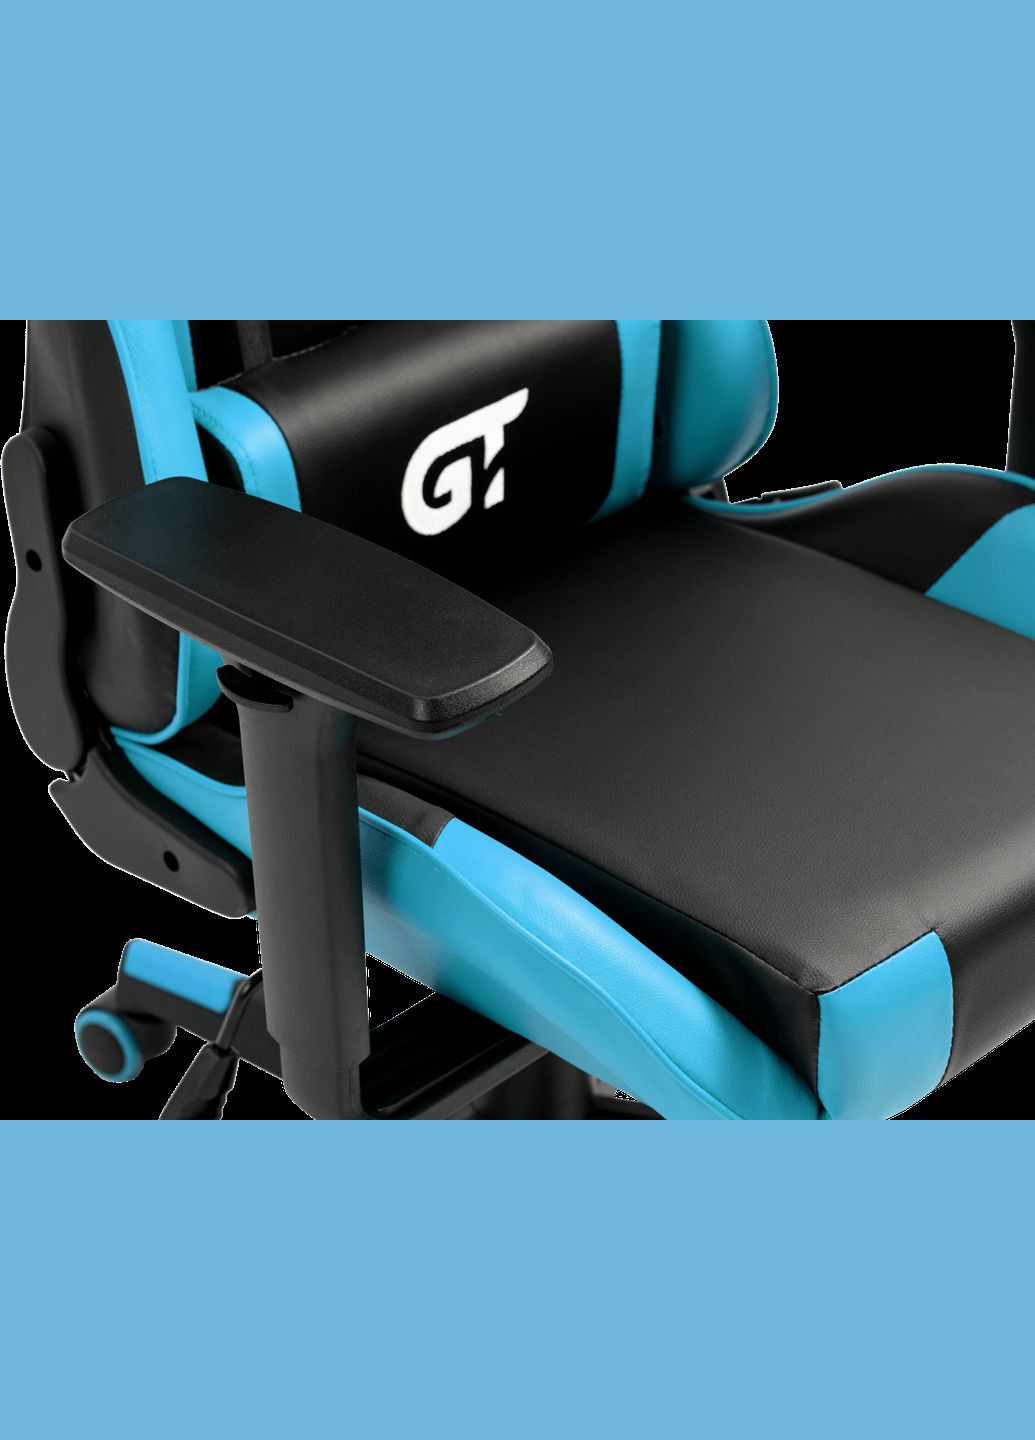 Геймерське дитяче крісло X5934-B Kids Black/Blue GT Racer (293944113)